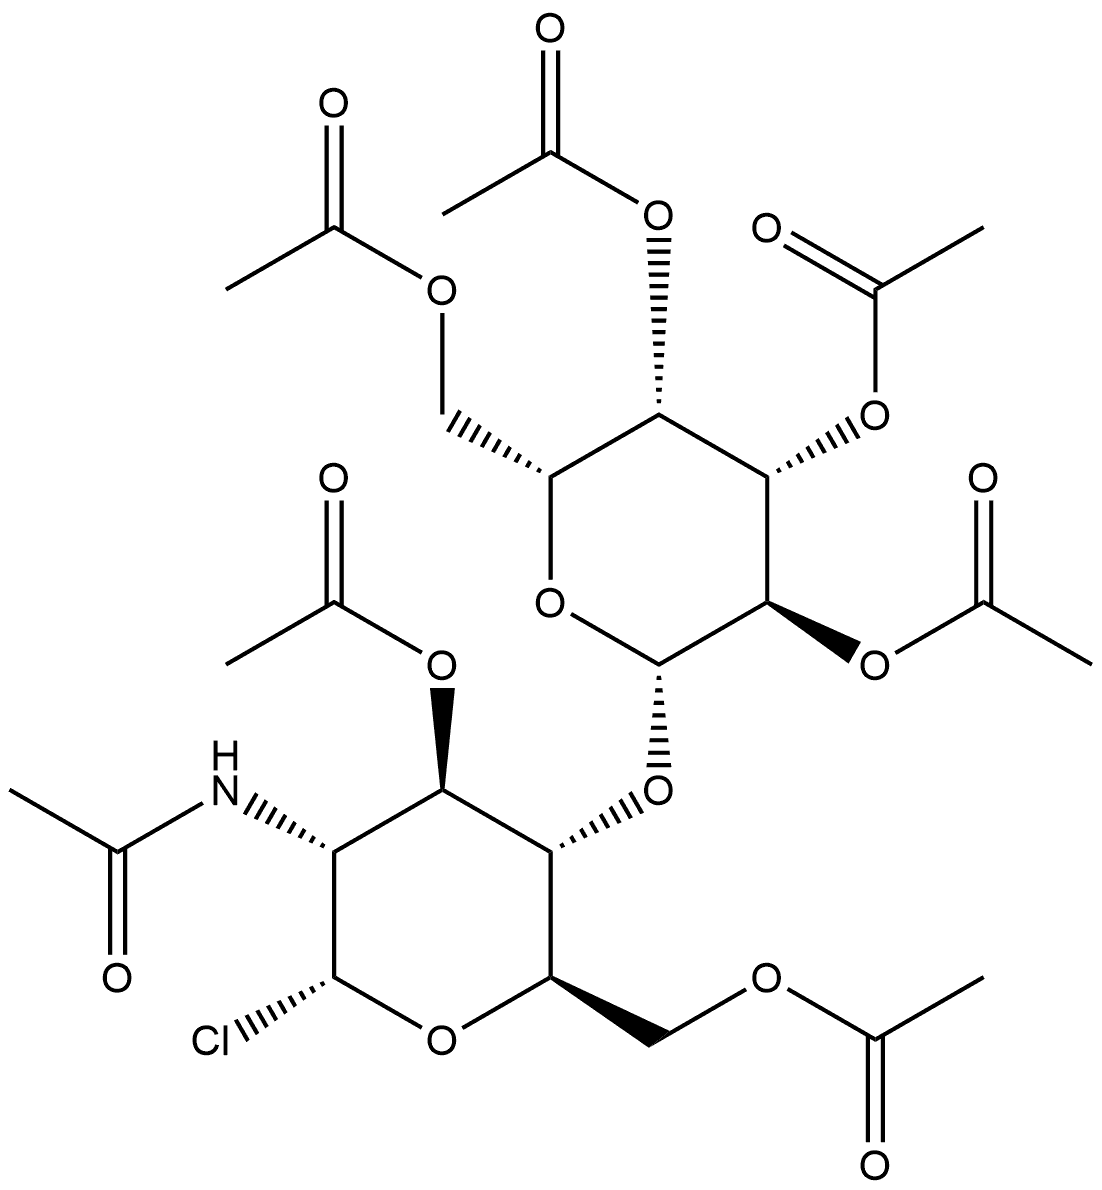 62398-01-0 α-D-Glucopyranosyl chloride, 2-(acetylamino)-2-deoxy-4-O-(2,3,4,6-tetra-O-acetyl-β-D-galactopyranosyl)-, 3,6-diacetate